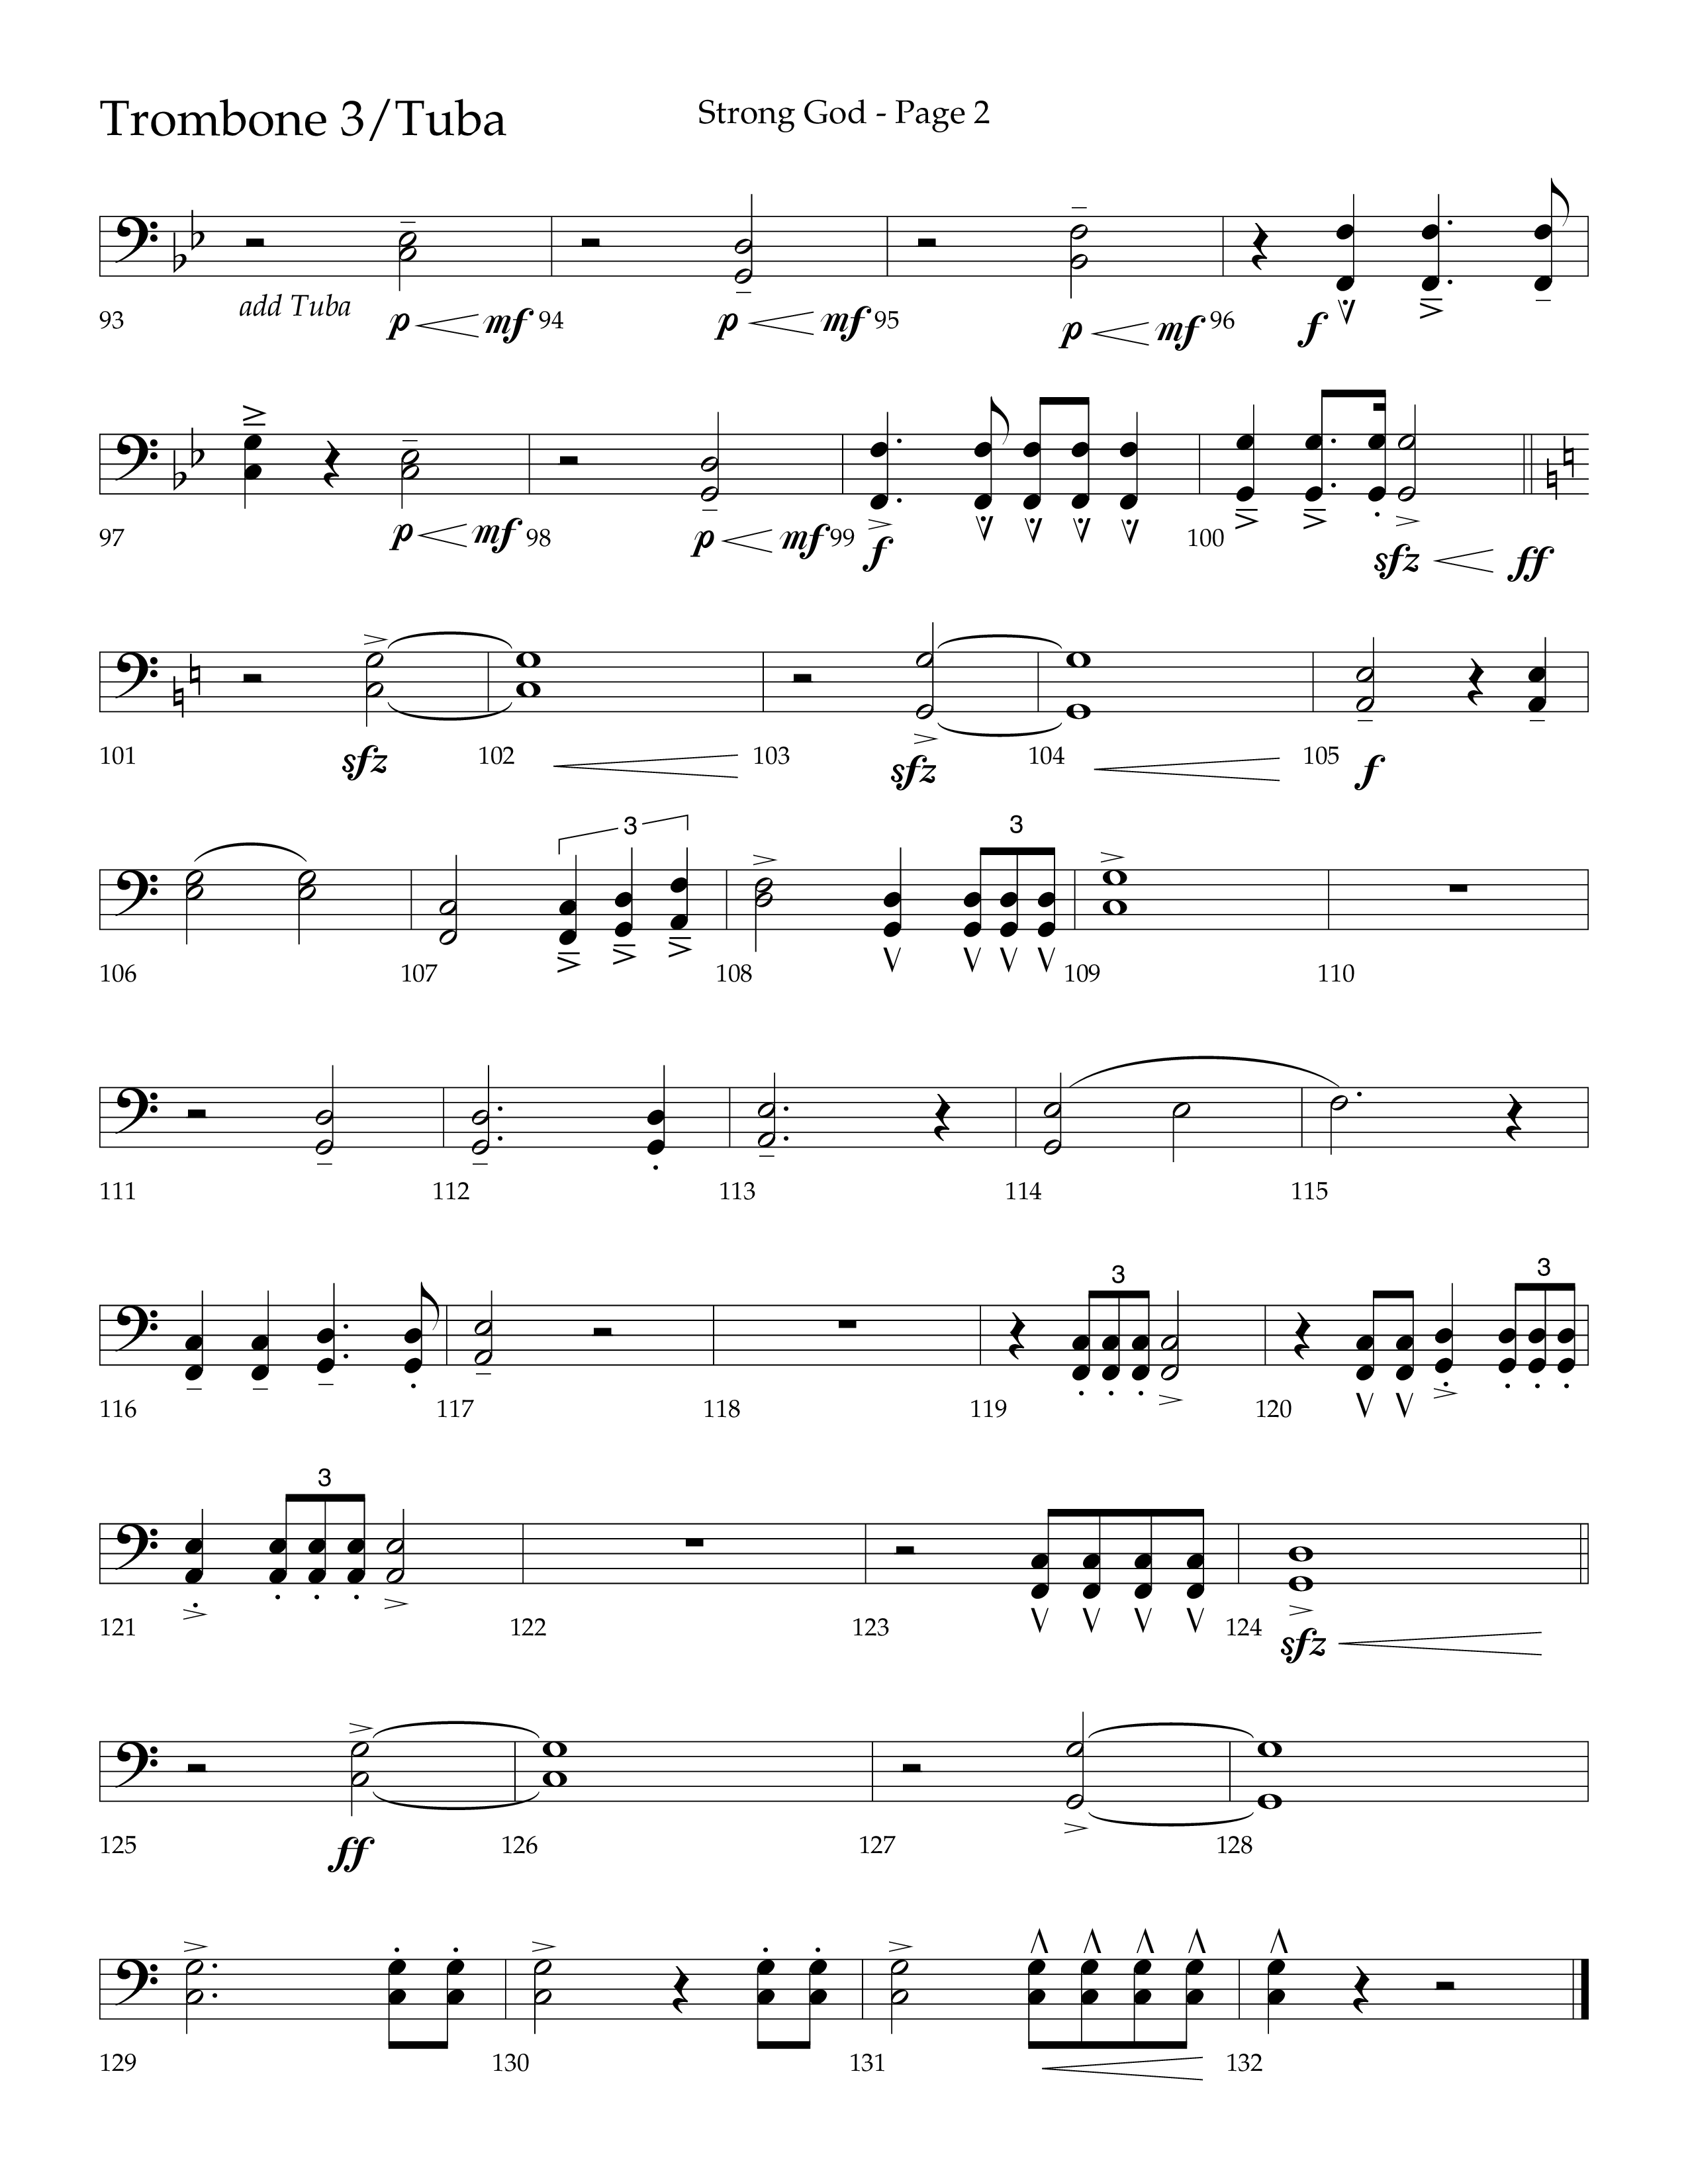 Strong God (Choral Anthem SATB) Trombone 3/Tuba (Lifeway Choral / Arr. Craig Adams / Arr. Bruce Cokeroft / Orch. Craig Adams)